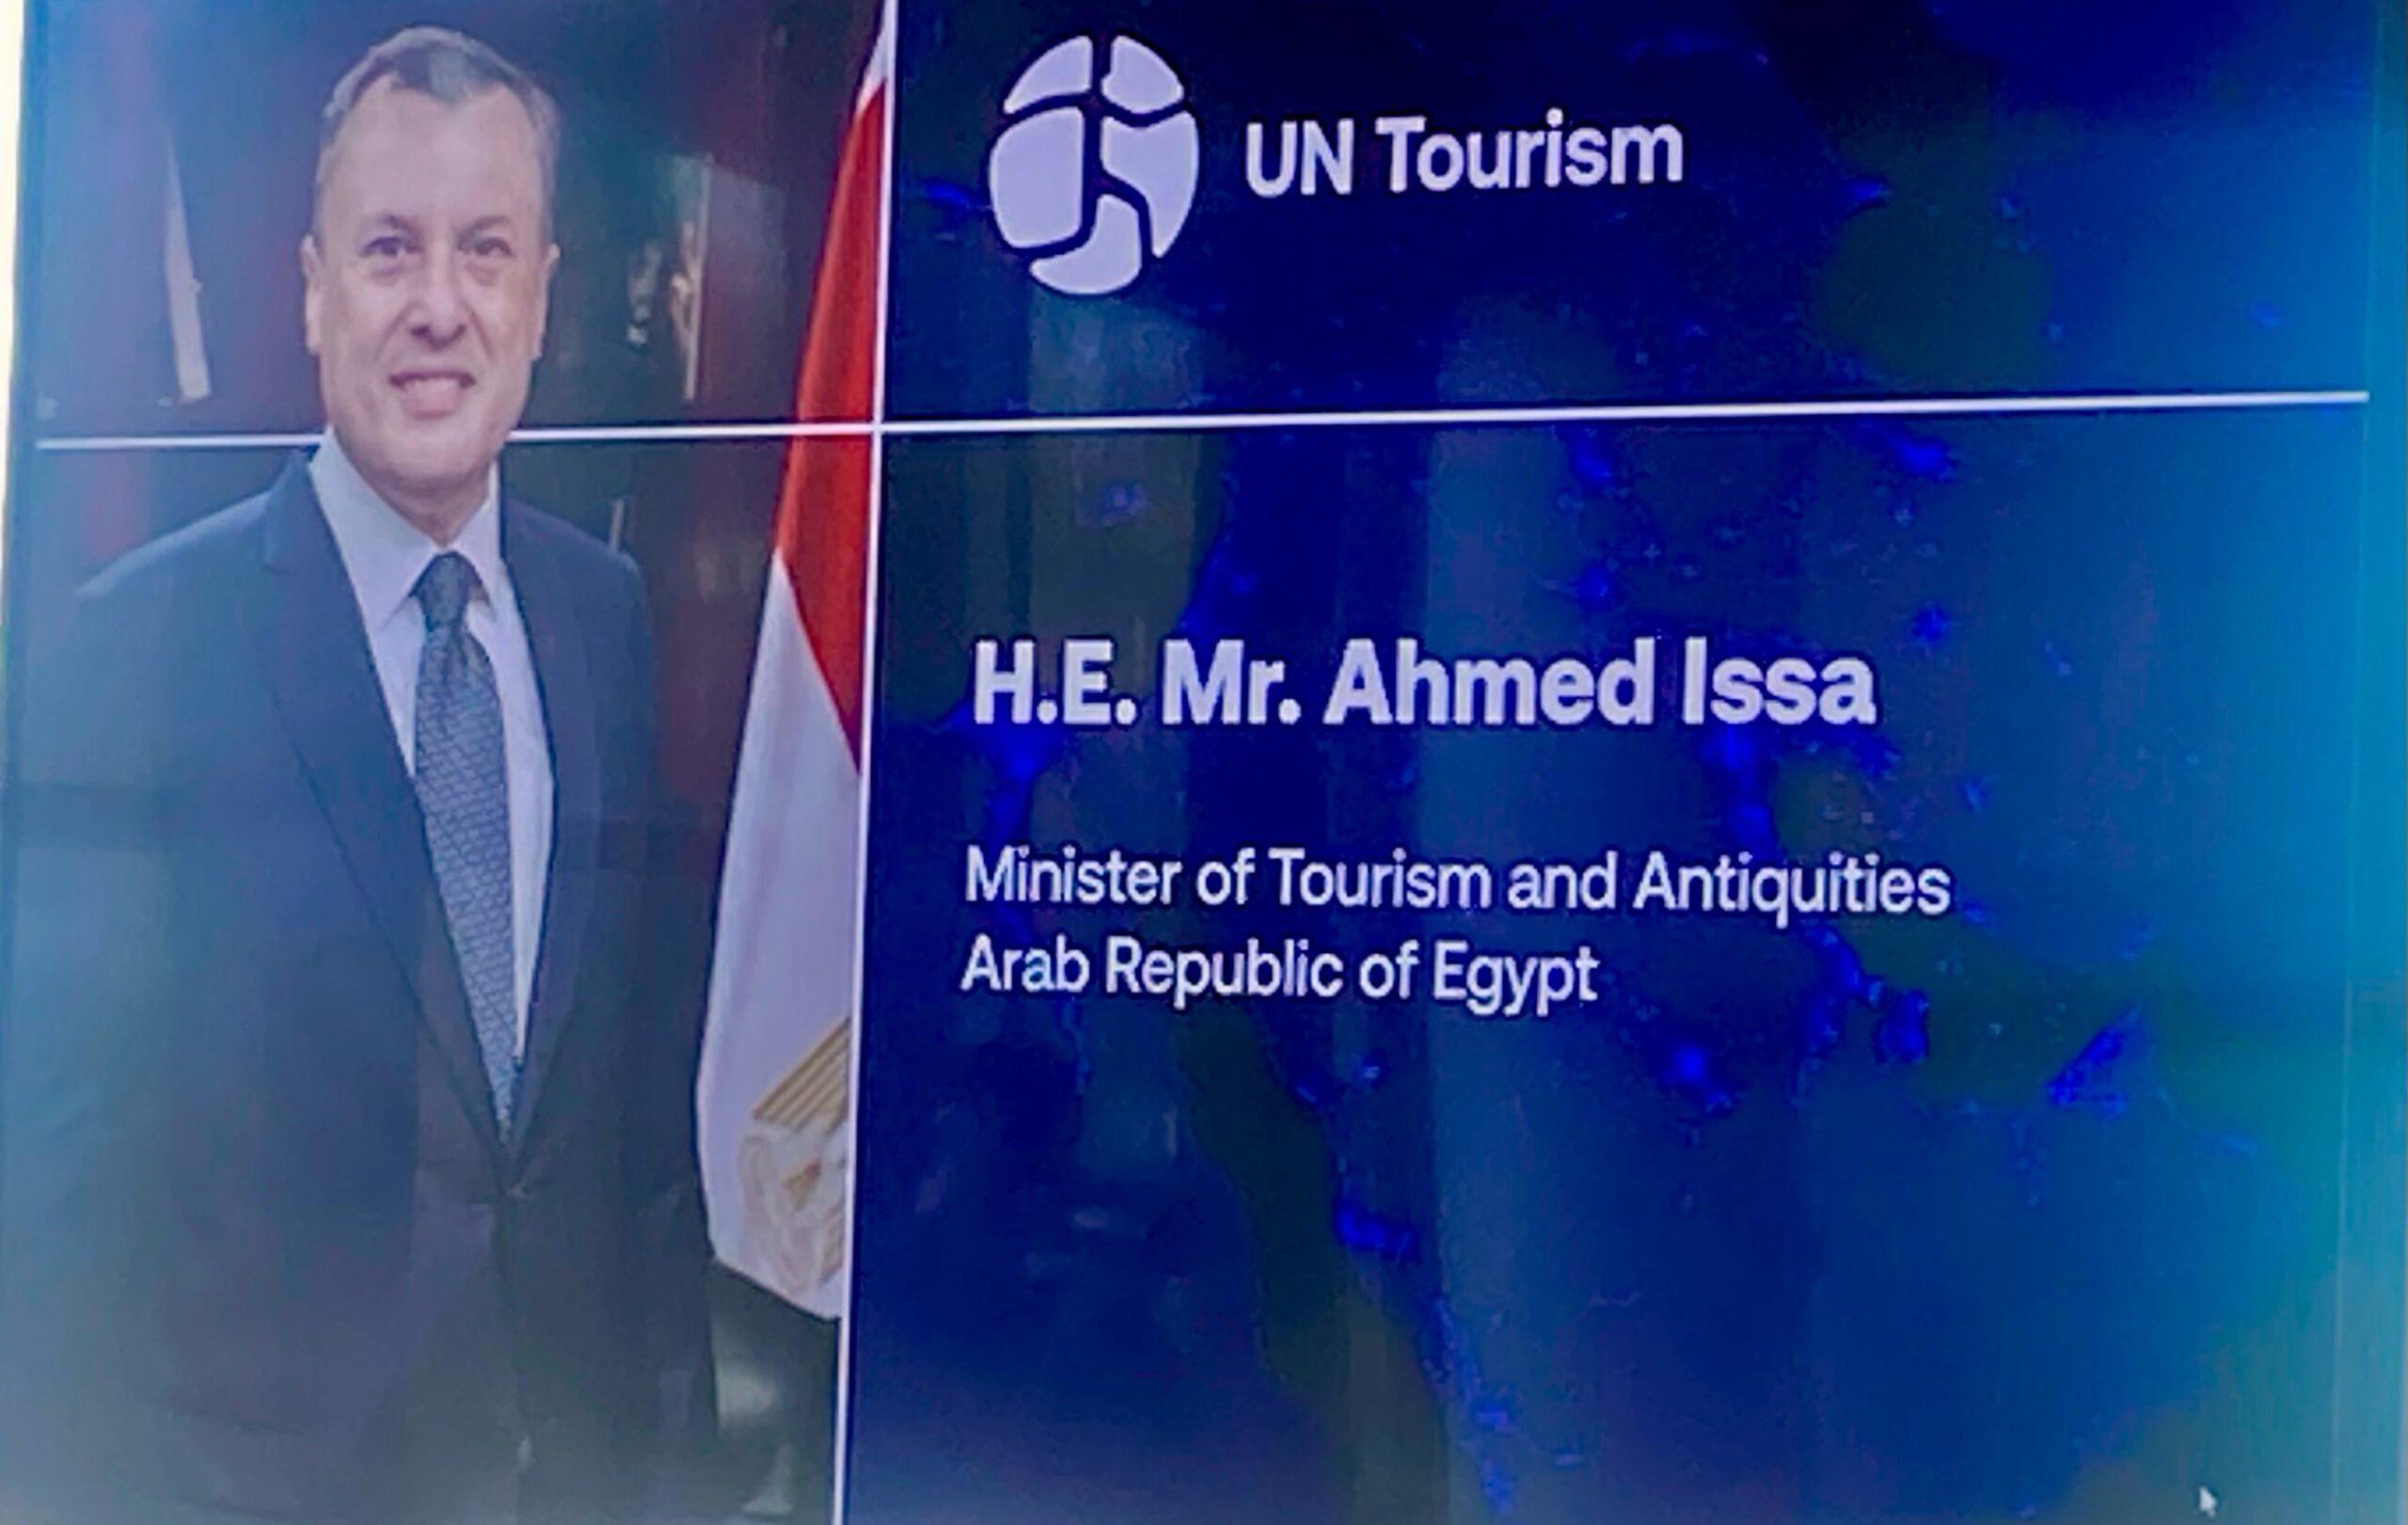 وزير السياحة والآثار يشارك كمتحدث في الجلسة النقاشية الوزارية لمنظمة الأمم المتحدة للسياحة